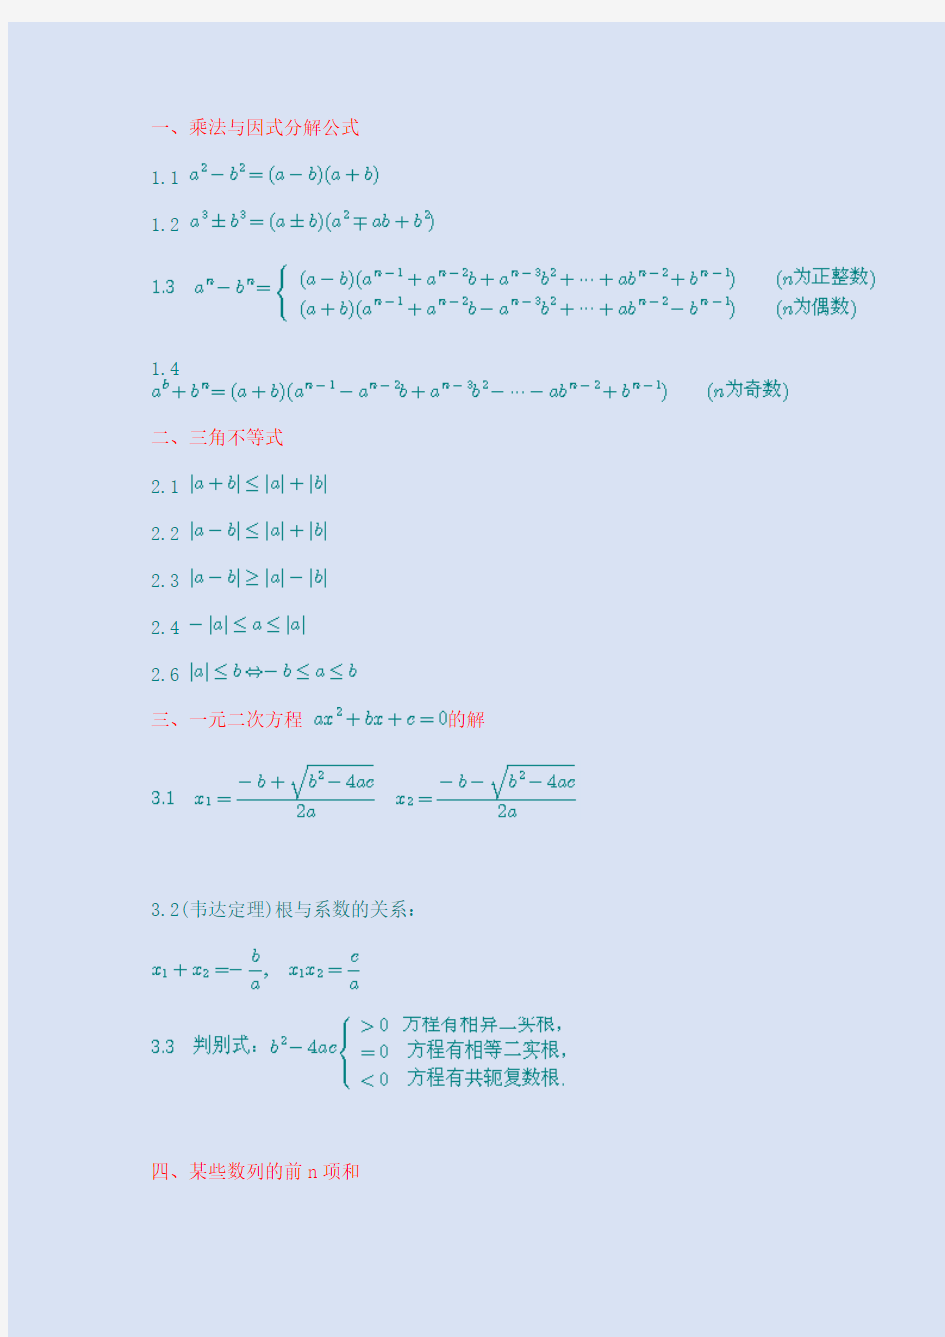 自考高等数学一常考数学公式精心整理版完整版